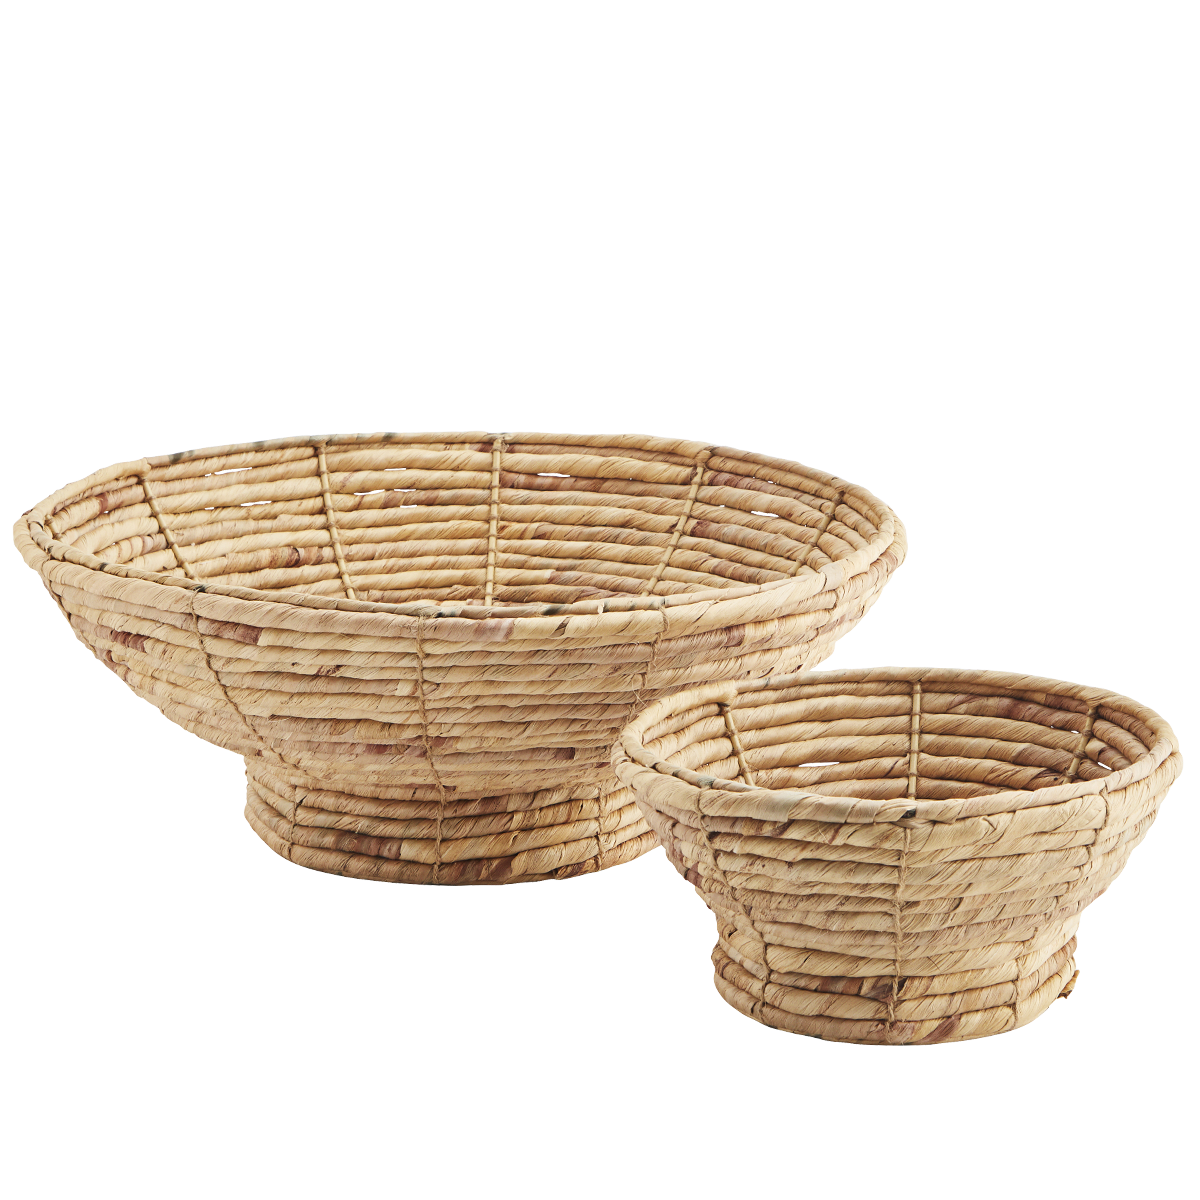 Water hyacinth bowls